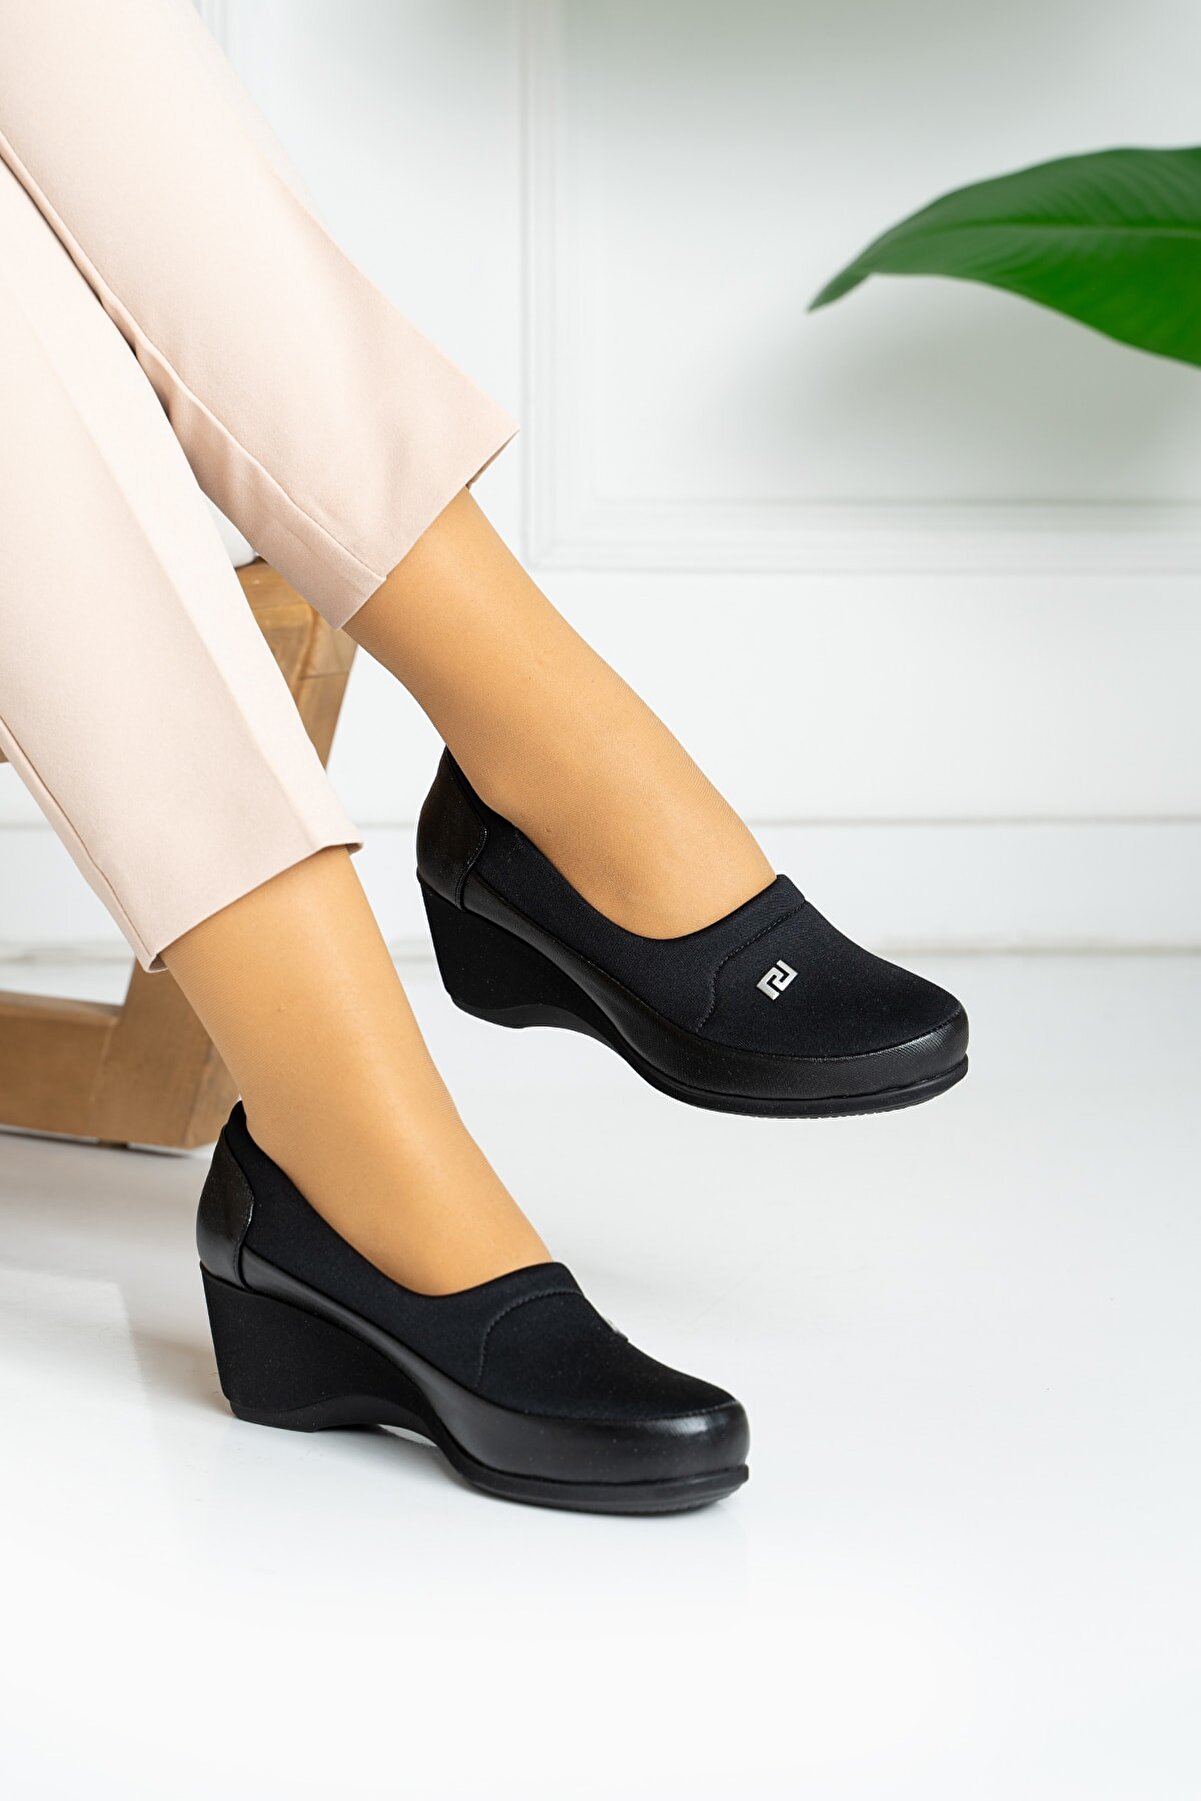 MERVESTORE Bayan Ortapedik Klasik Ayakkabı